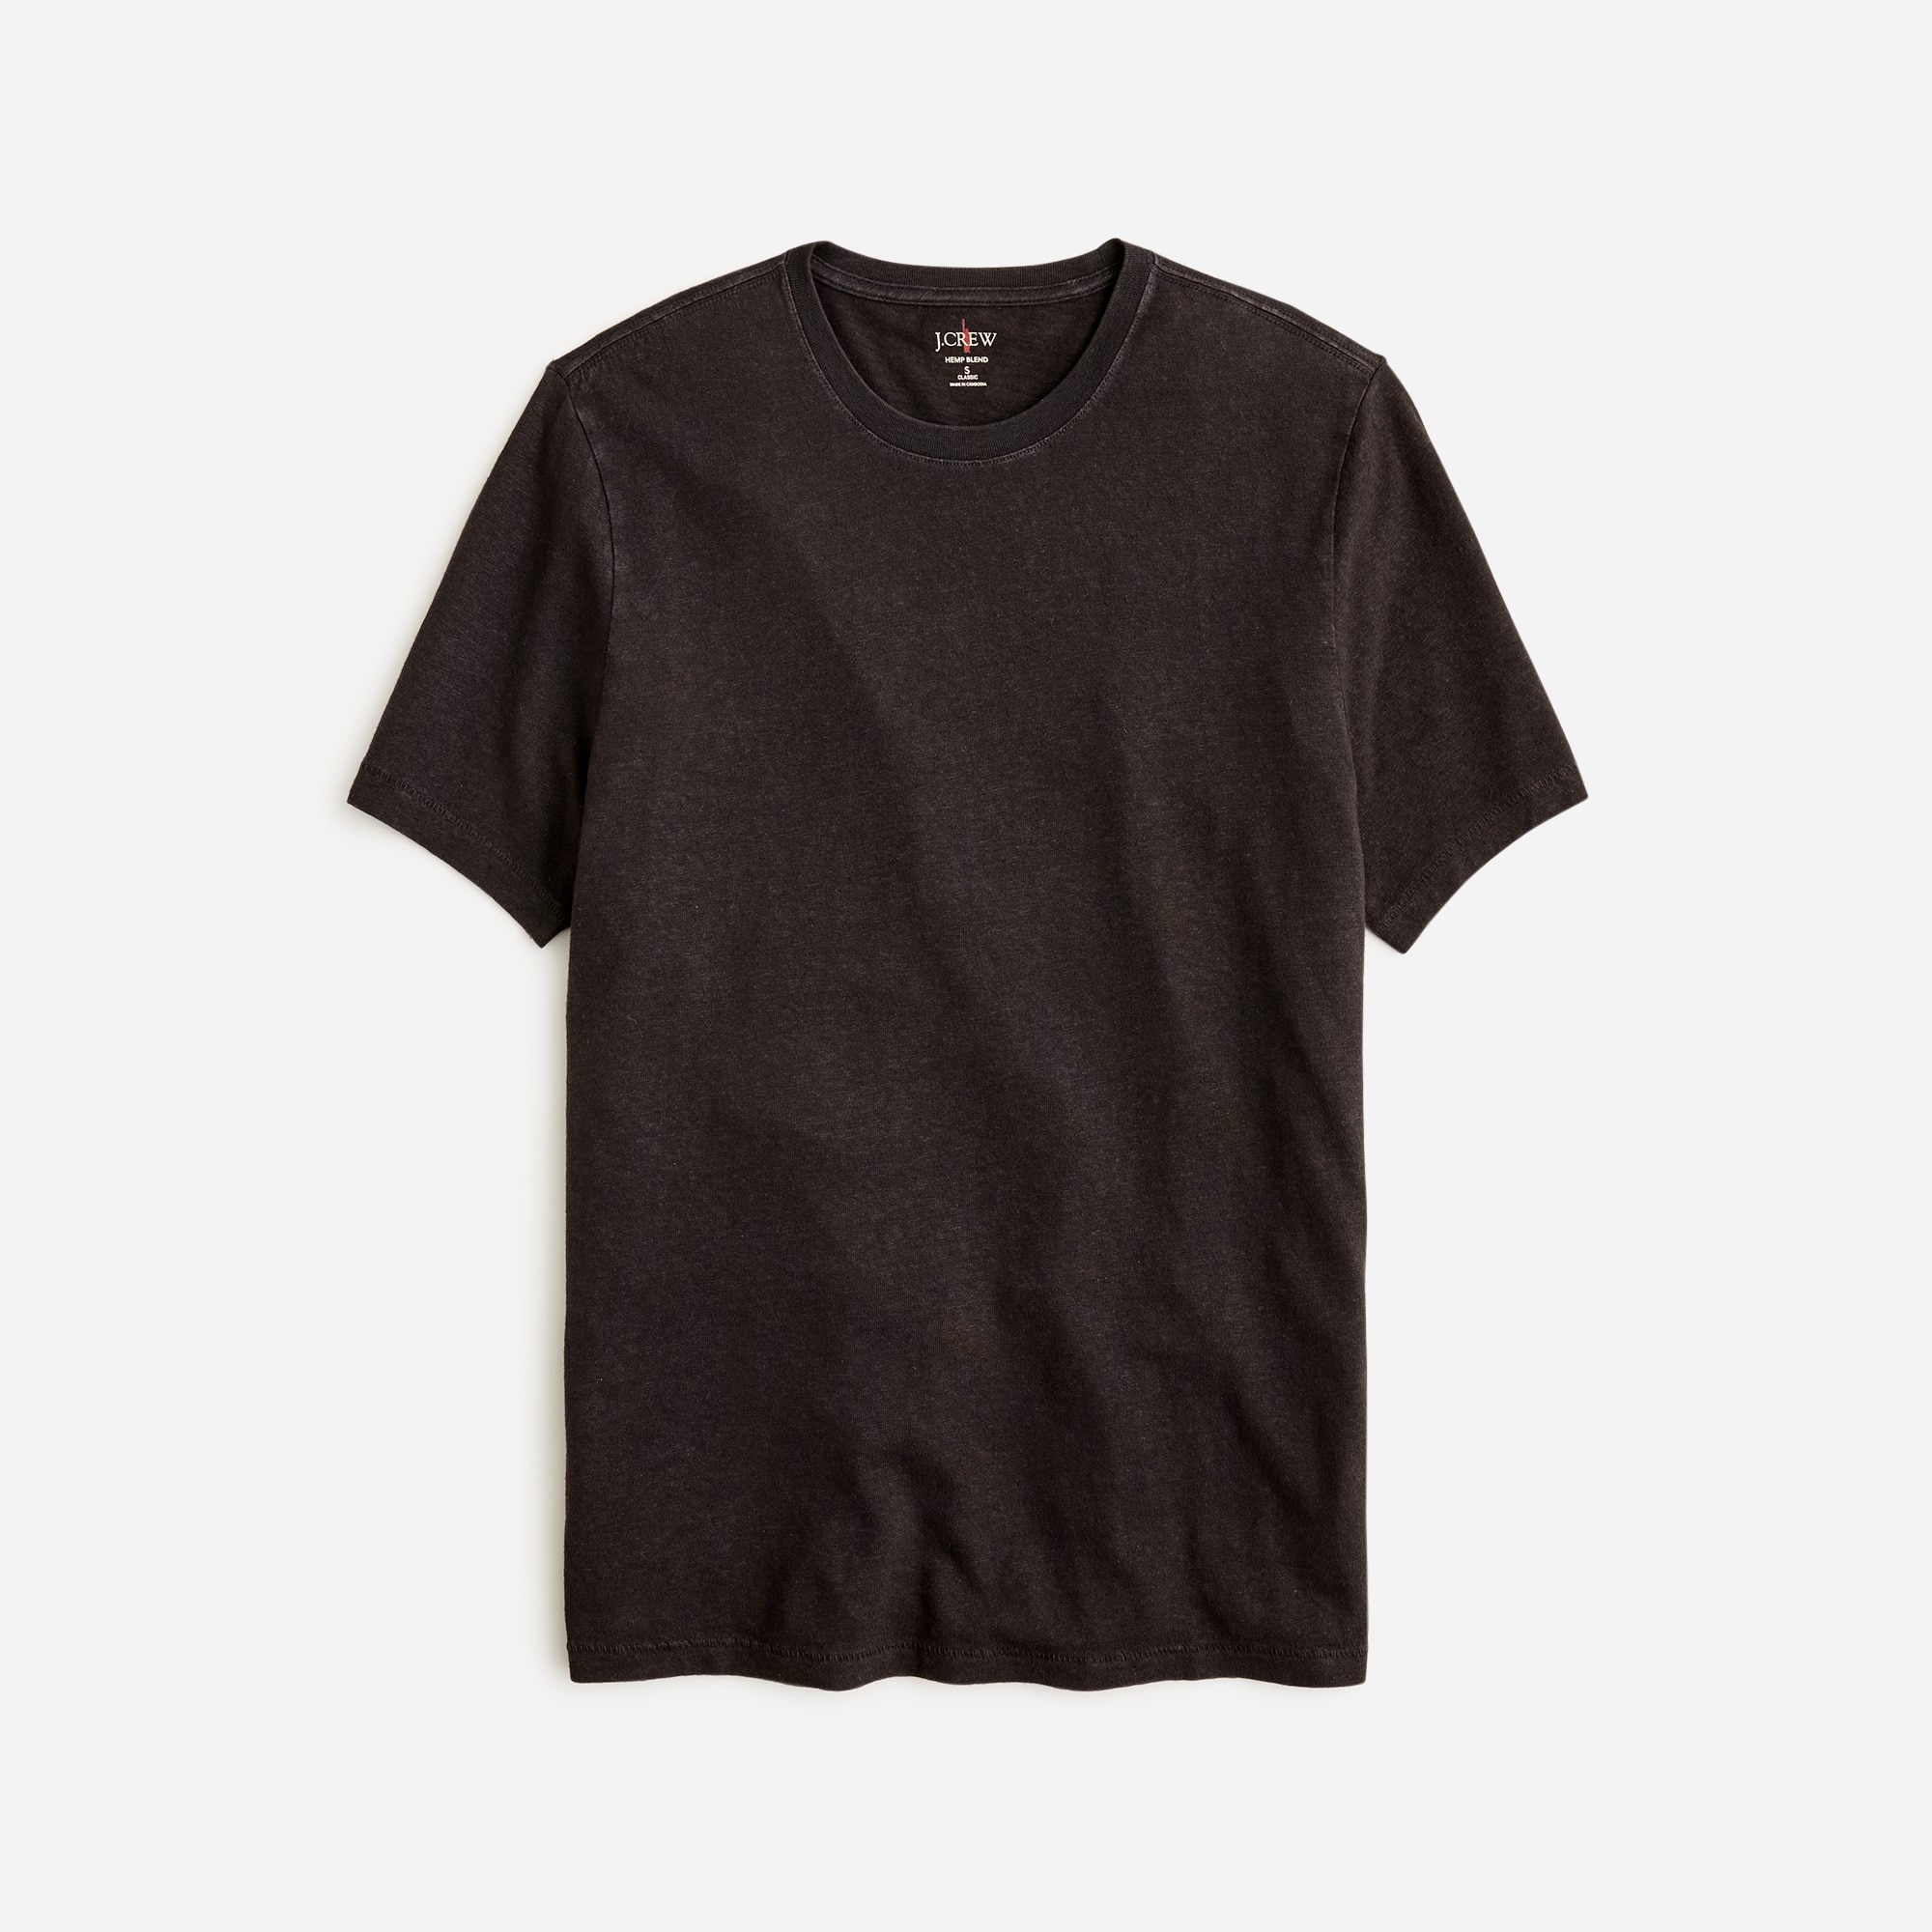 Jcrew Hemp-organic cotton blend T-shirt